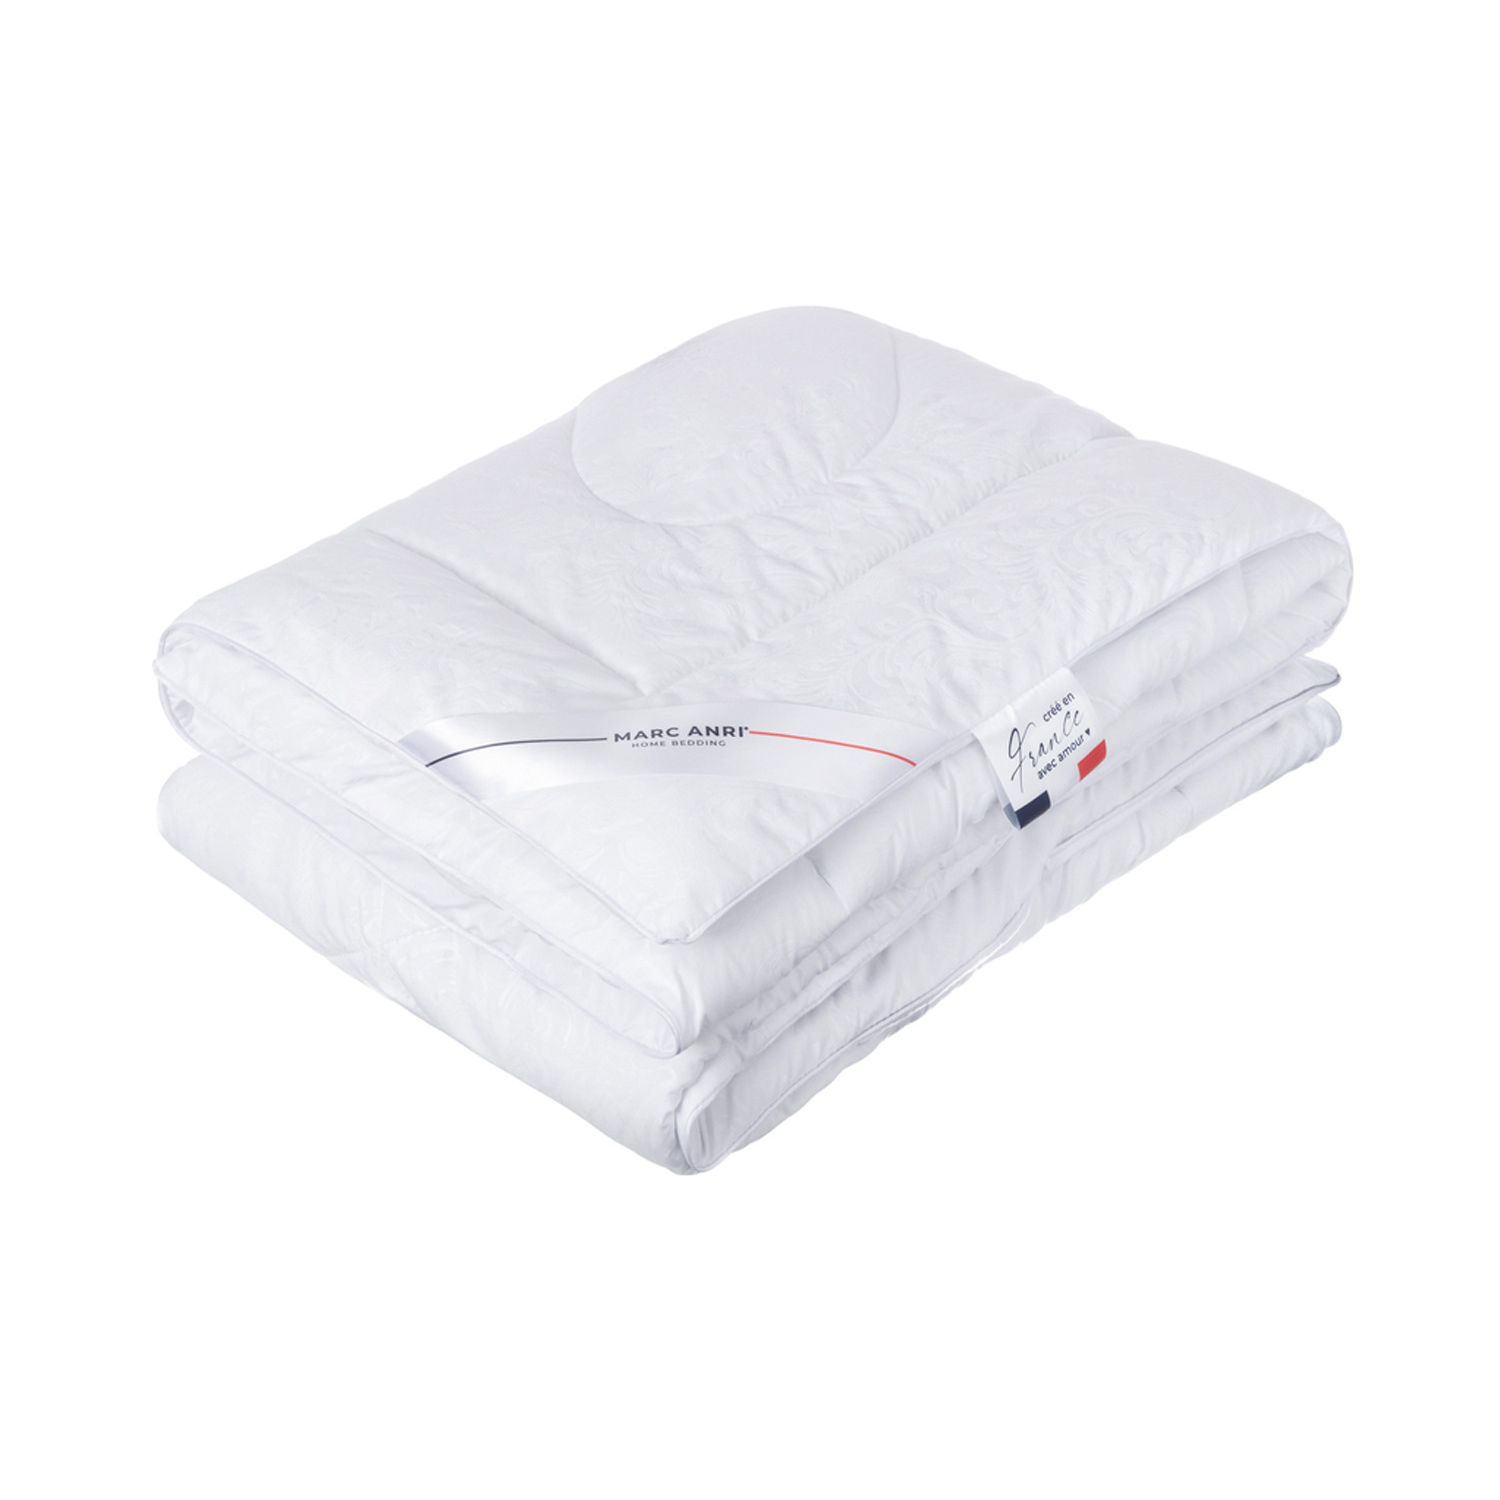 Одеяло Marc Anri Chinon белое 175х200 см (MA-MF) пуховое одеяло marc anri cannes бежевое 200х220 см мн2066